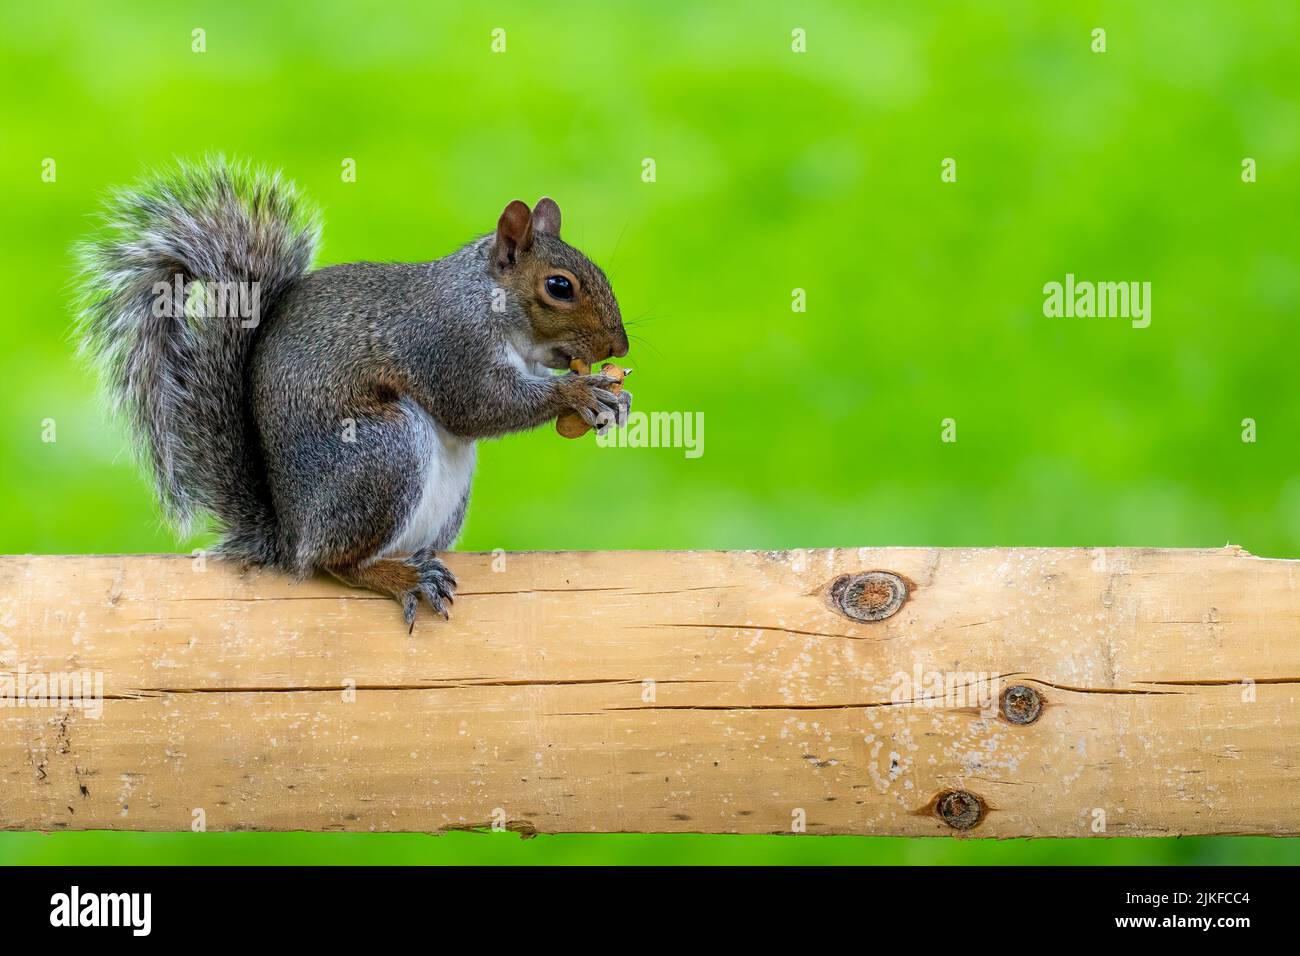 Eine Nahaufnahme eines östlichen grauen Eichhörnchens, das auf einem Baumstamm thront und einen Pinienkegel frisst Stockfoto